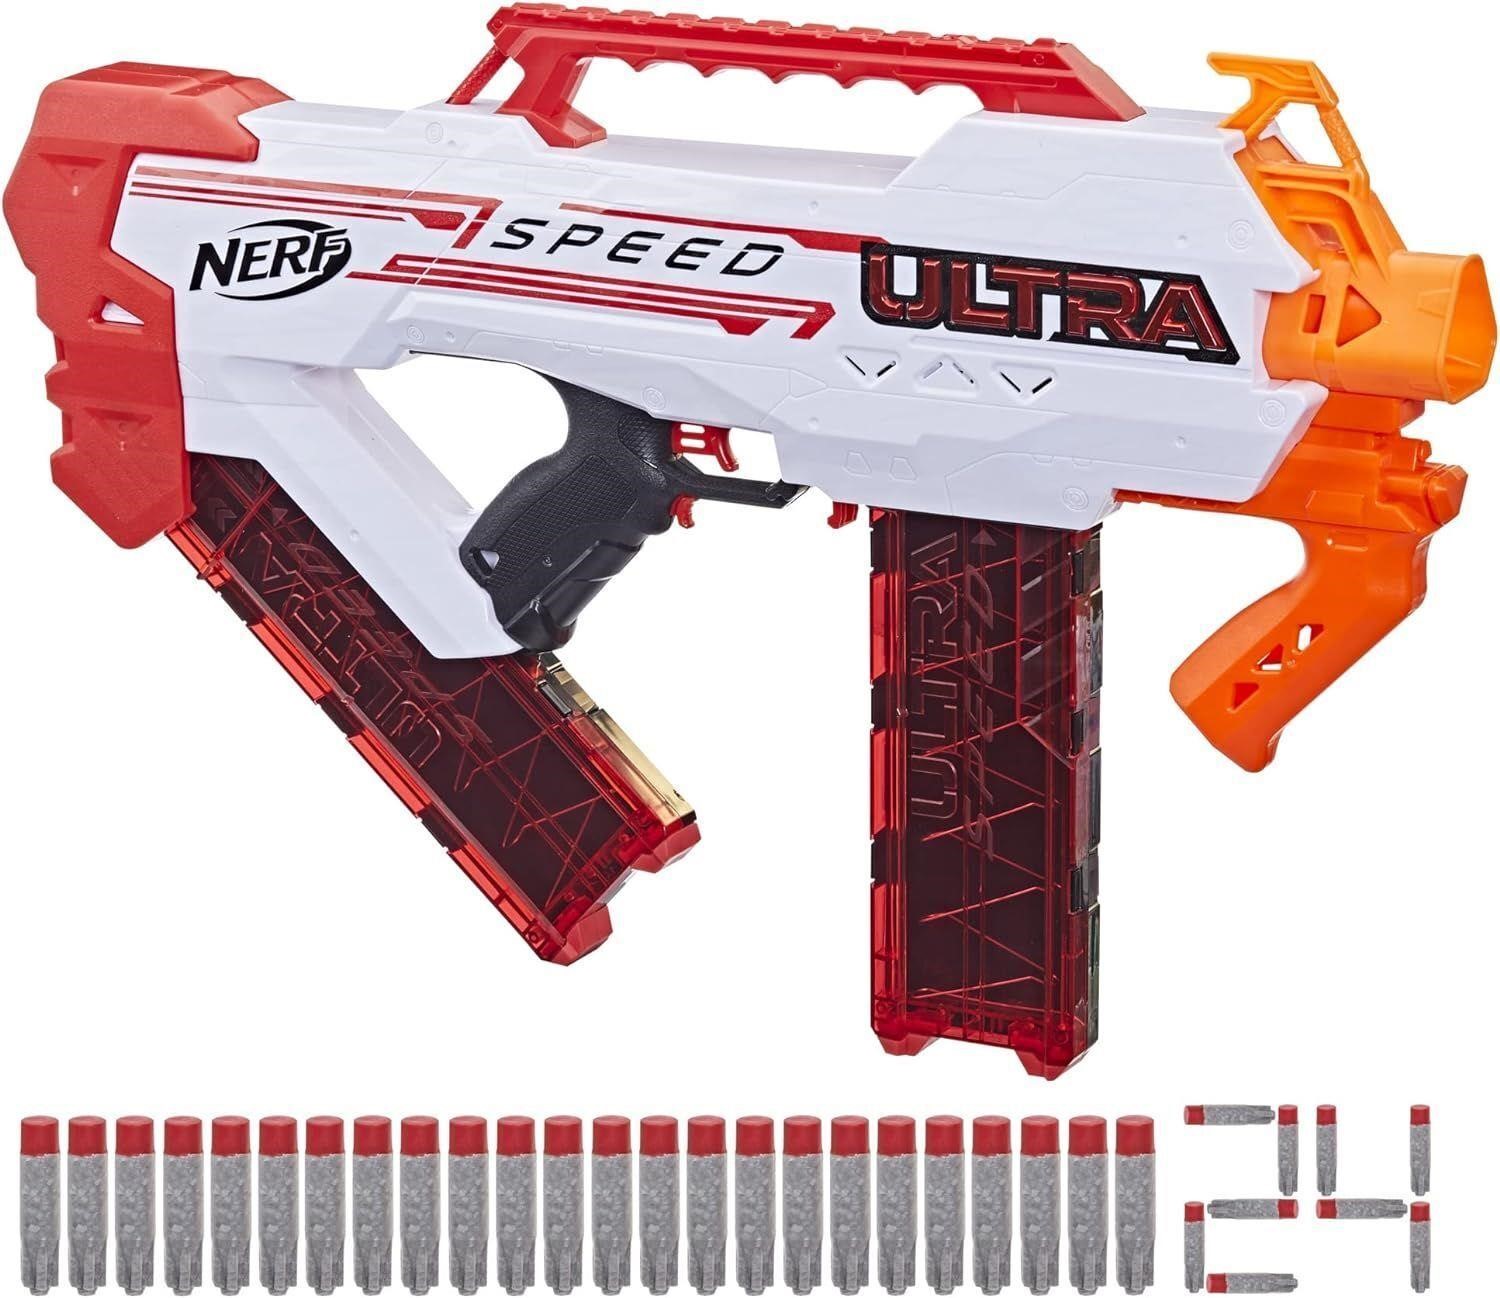 NERF Ultra Speed Fully Motorized Blaster